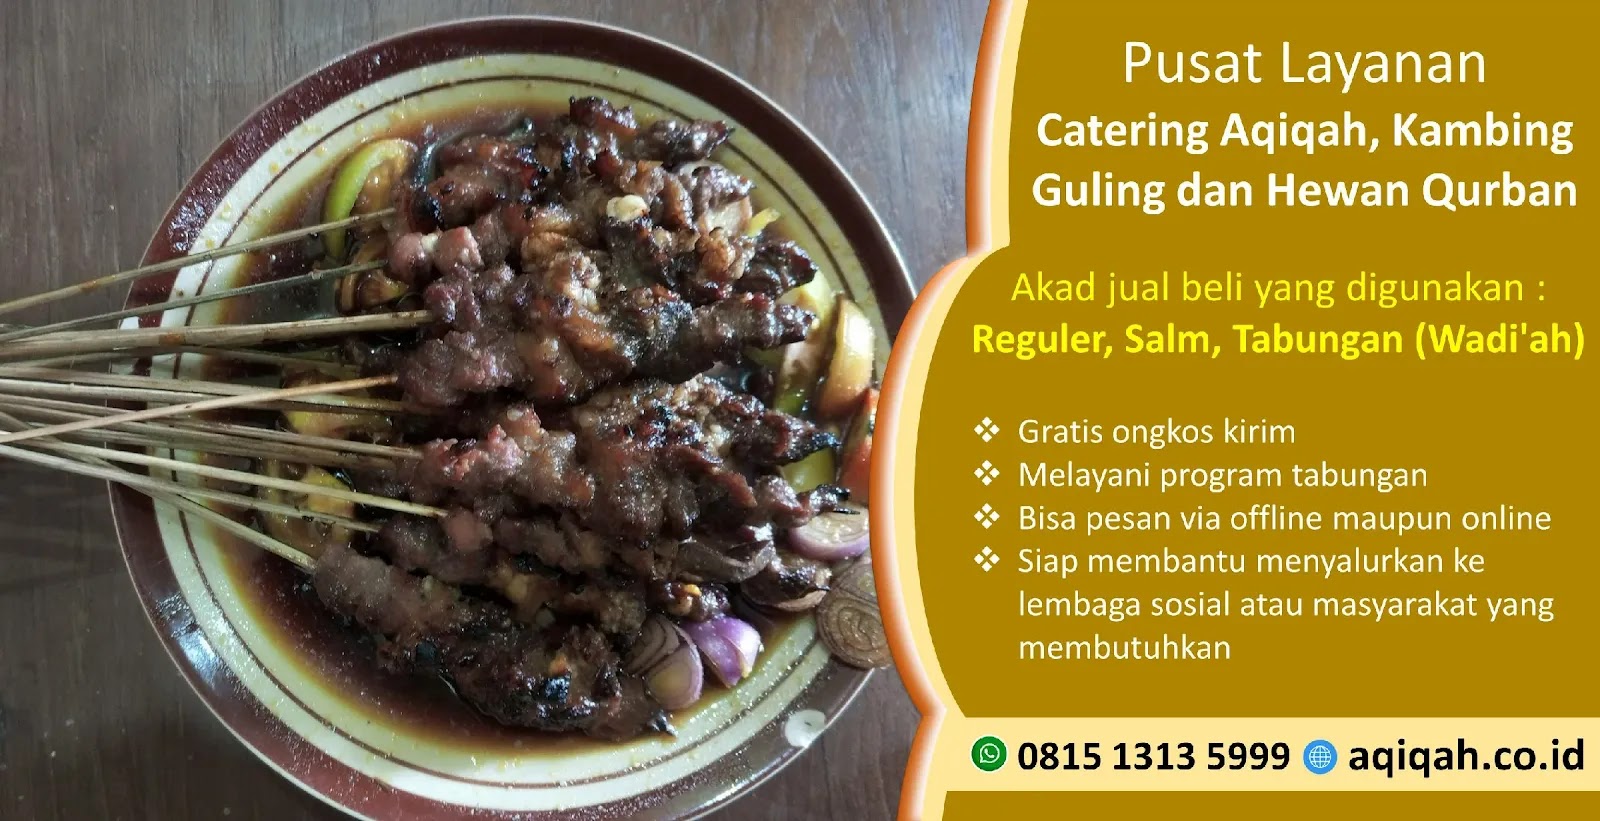 Harga Paket Catering Aqiqoh Plupuh Sragen Jawa Tengah